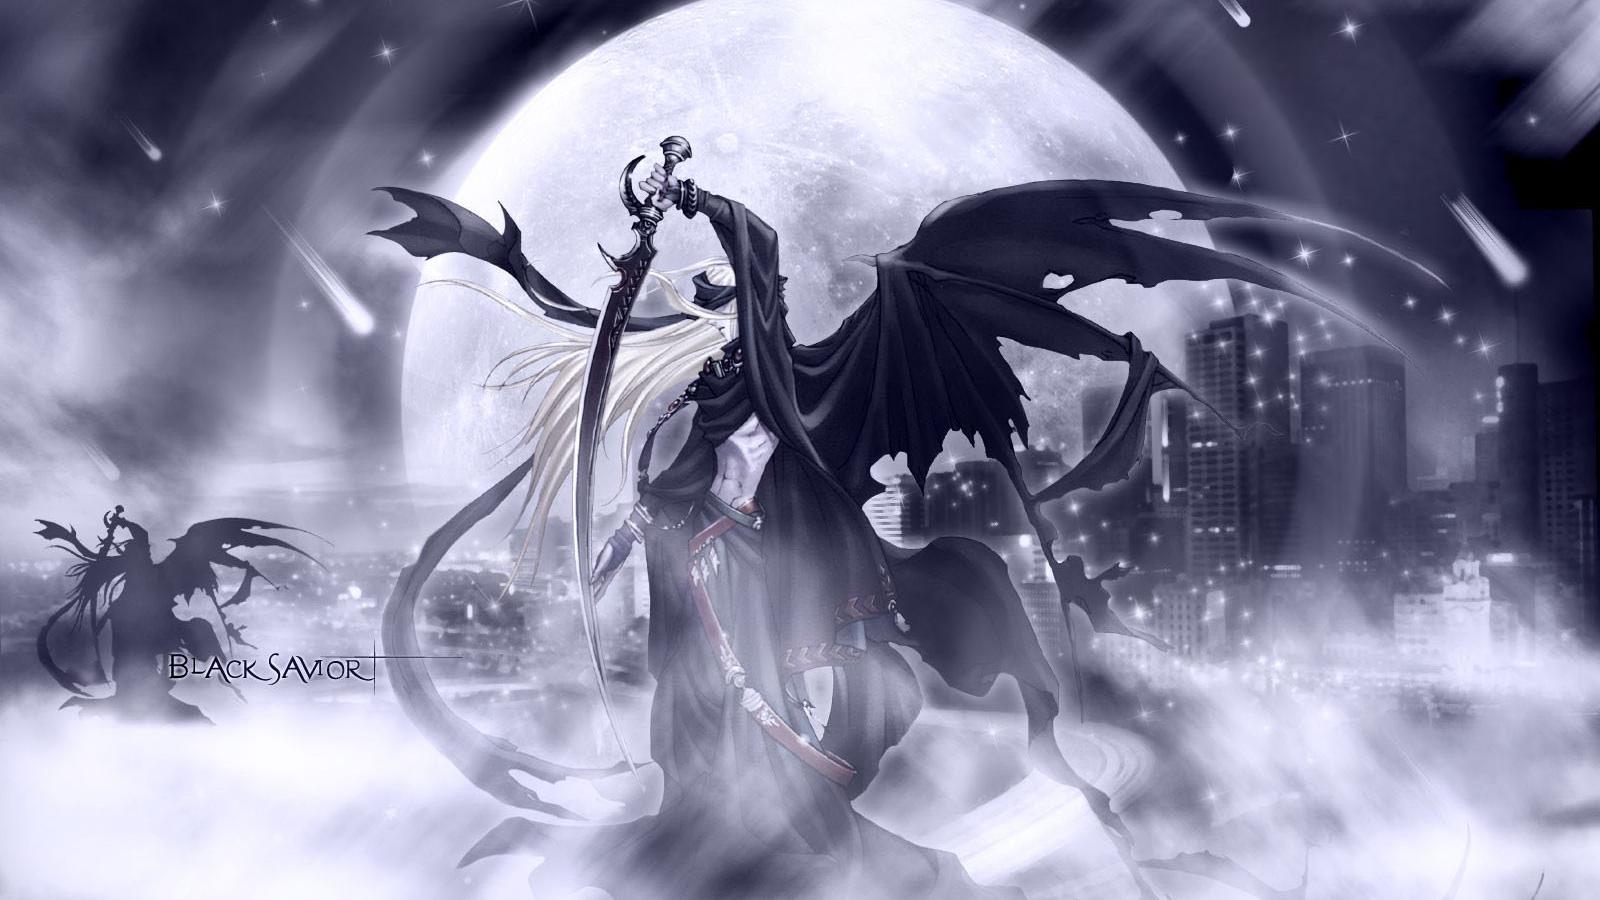 fond d'écran anime 1600x900,oeuvre de cg,personnage fictif,noir et blanc,illustration,créature mythique